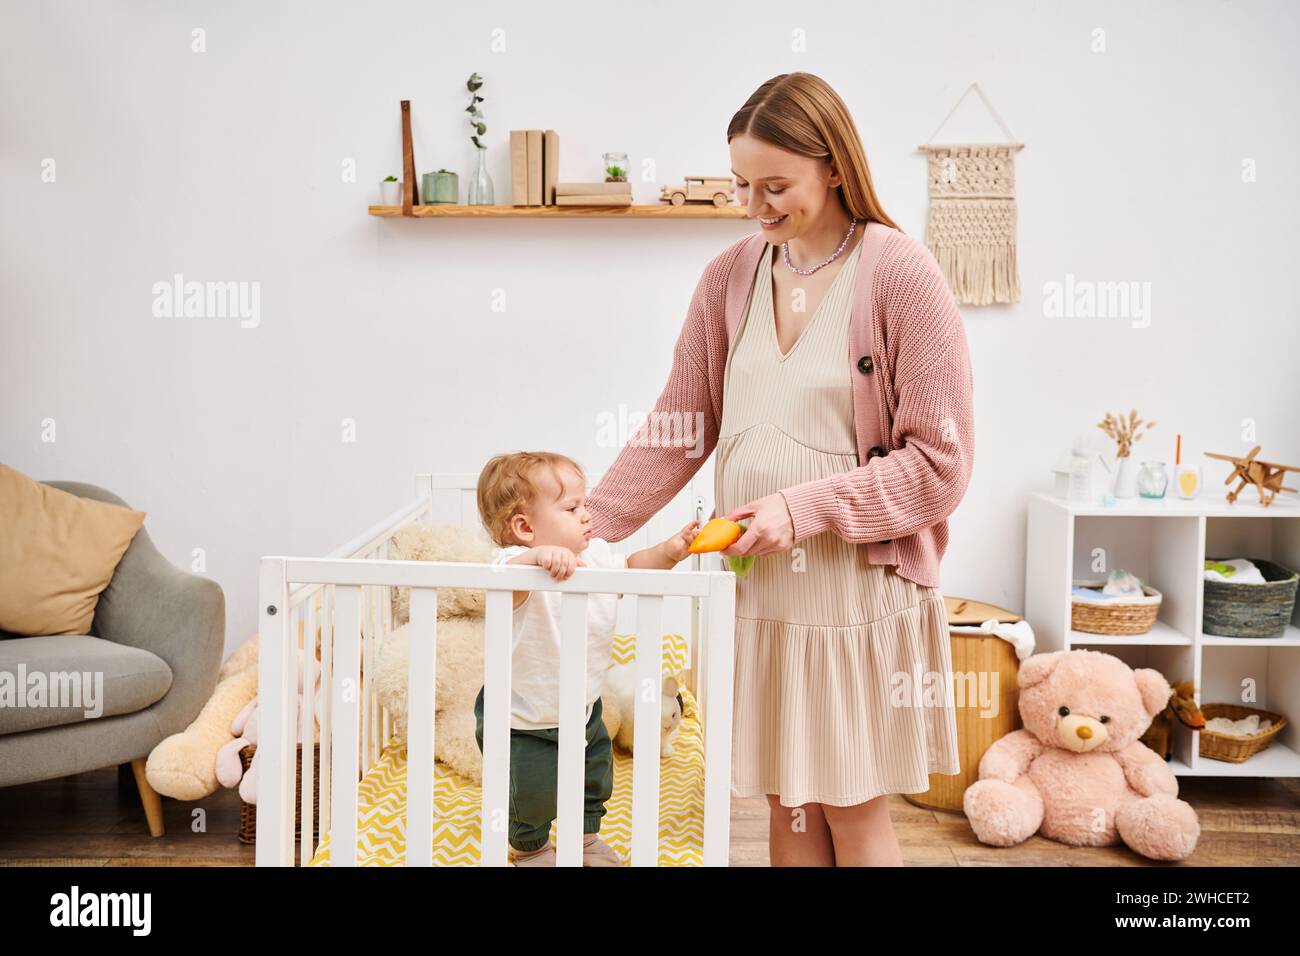 Fröhliche schwangere Frau, die Spielzeug hält, während sie mit dem kleinen Sohn spielt, der im Kinderzimmer im Kinderbett steht Stockfoto